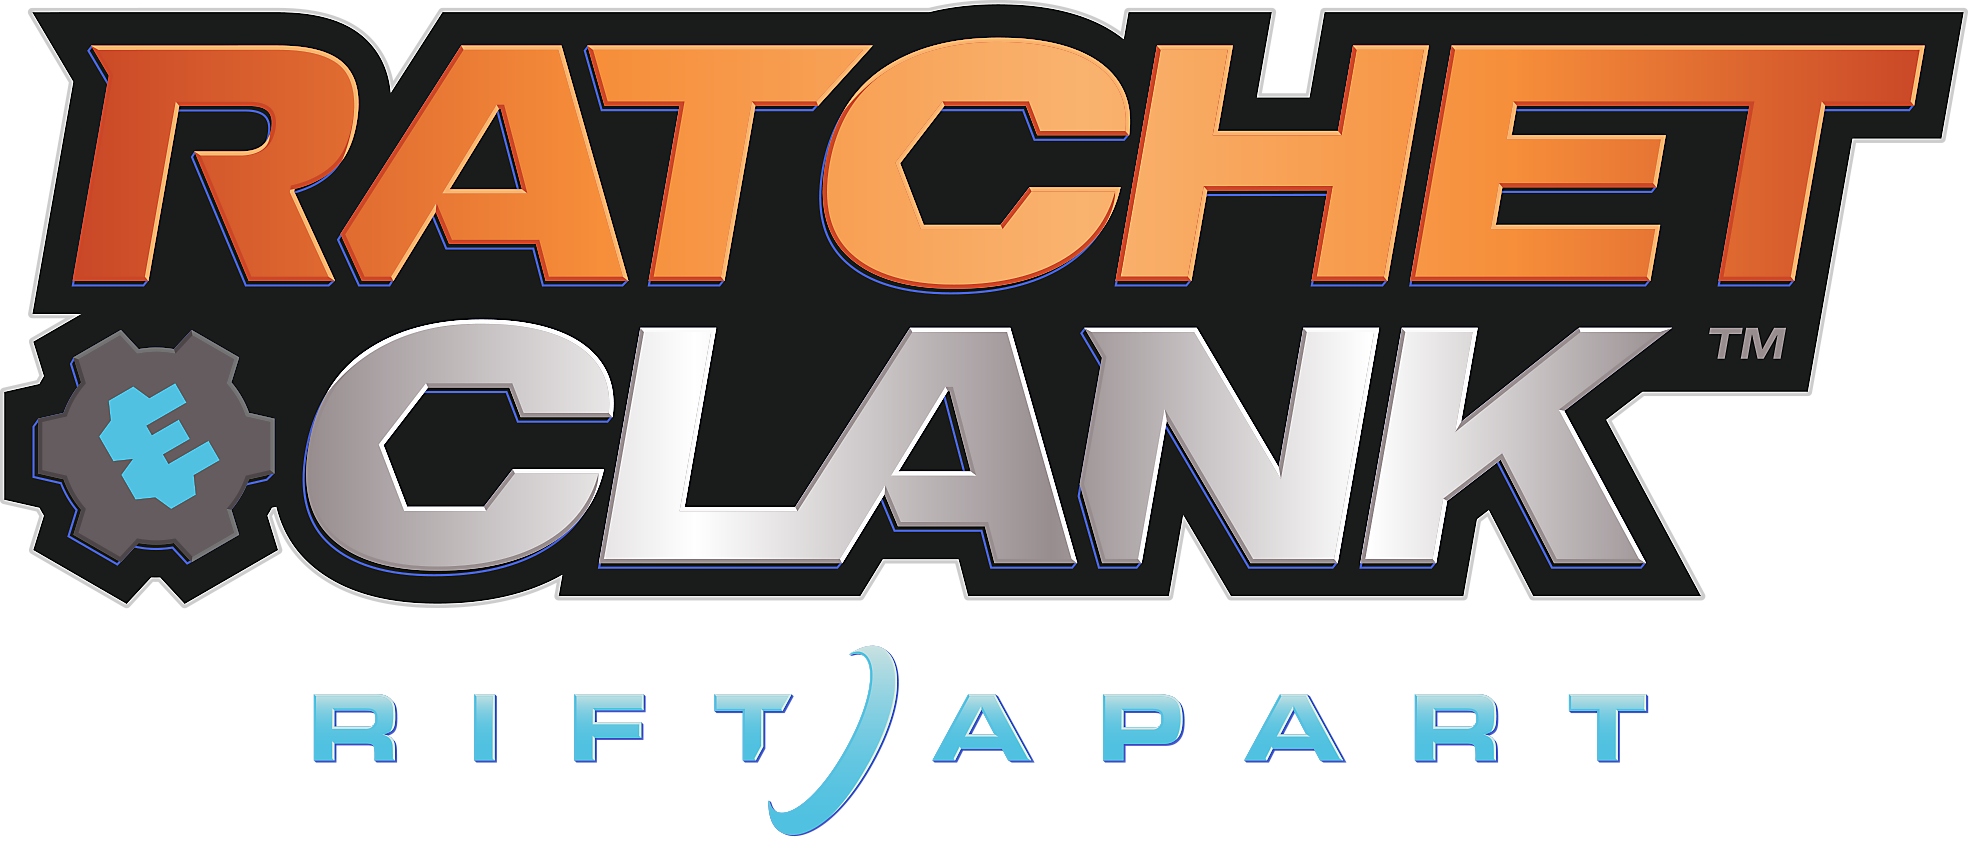 Logotipo de Ratchet & Clank: Una dimensión aparte